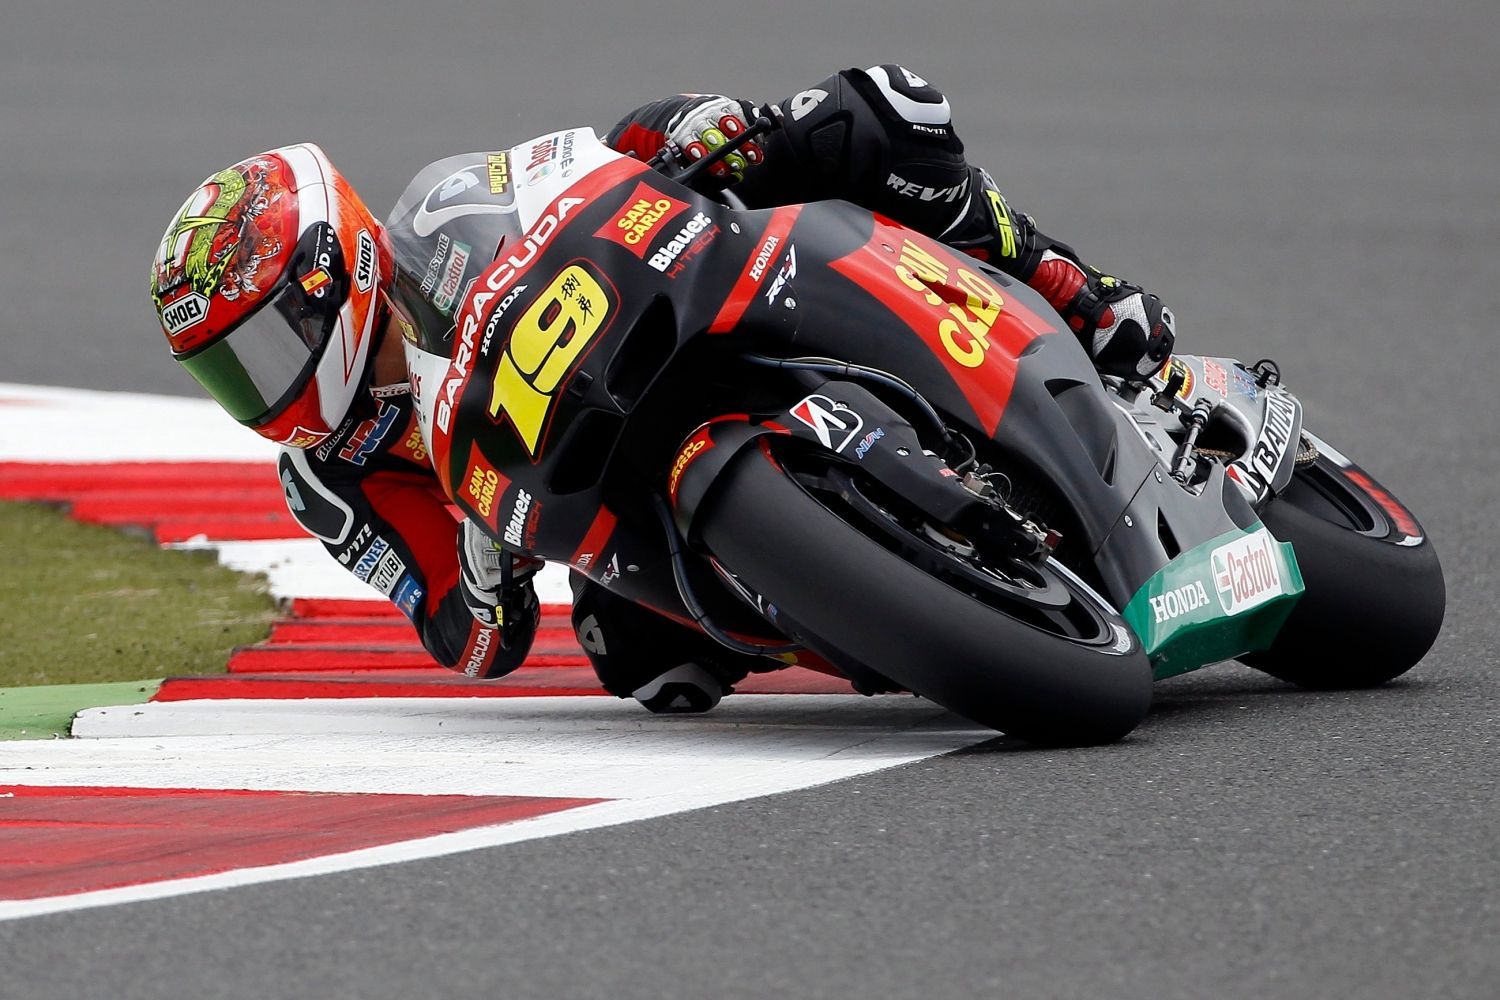 Španělský motocyklový jezdec Hondy, Alvaro Bautista v kategorii MotoGP na Grand Prix Velké Británie 2012